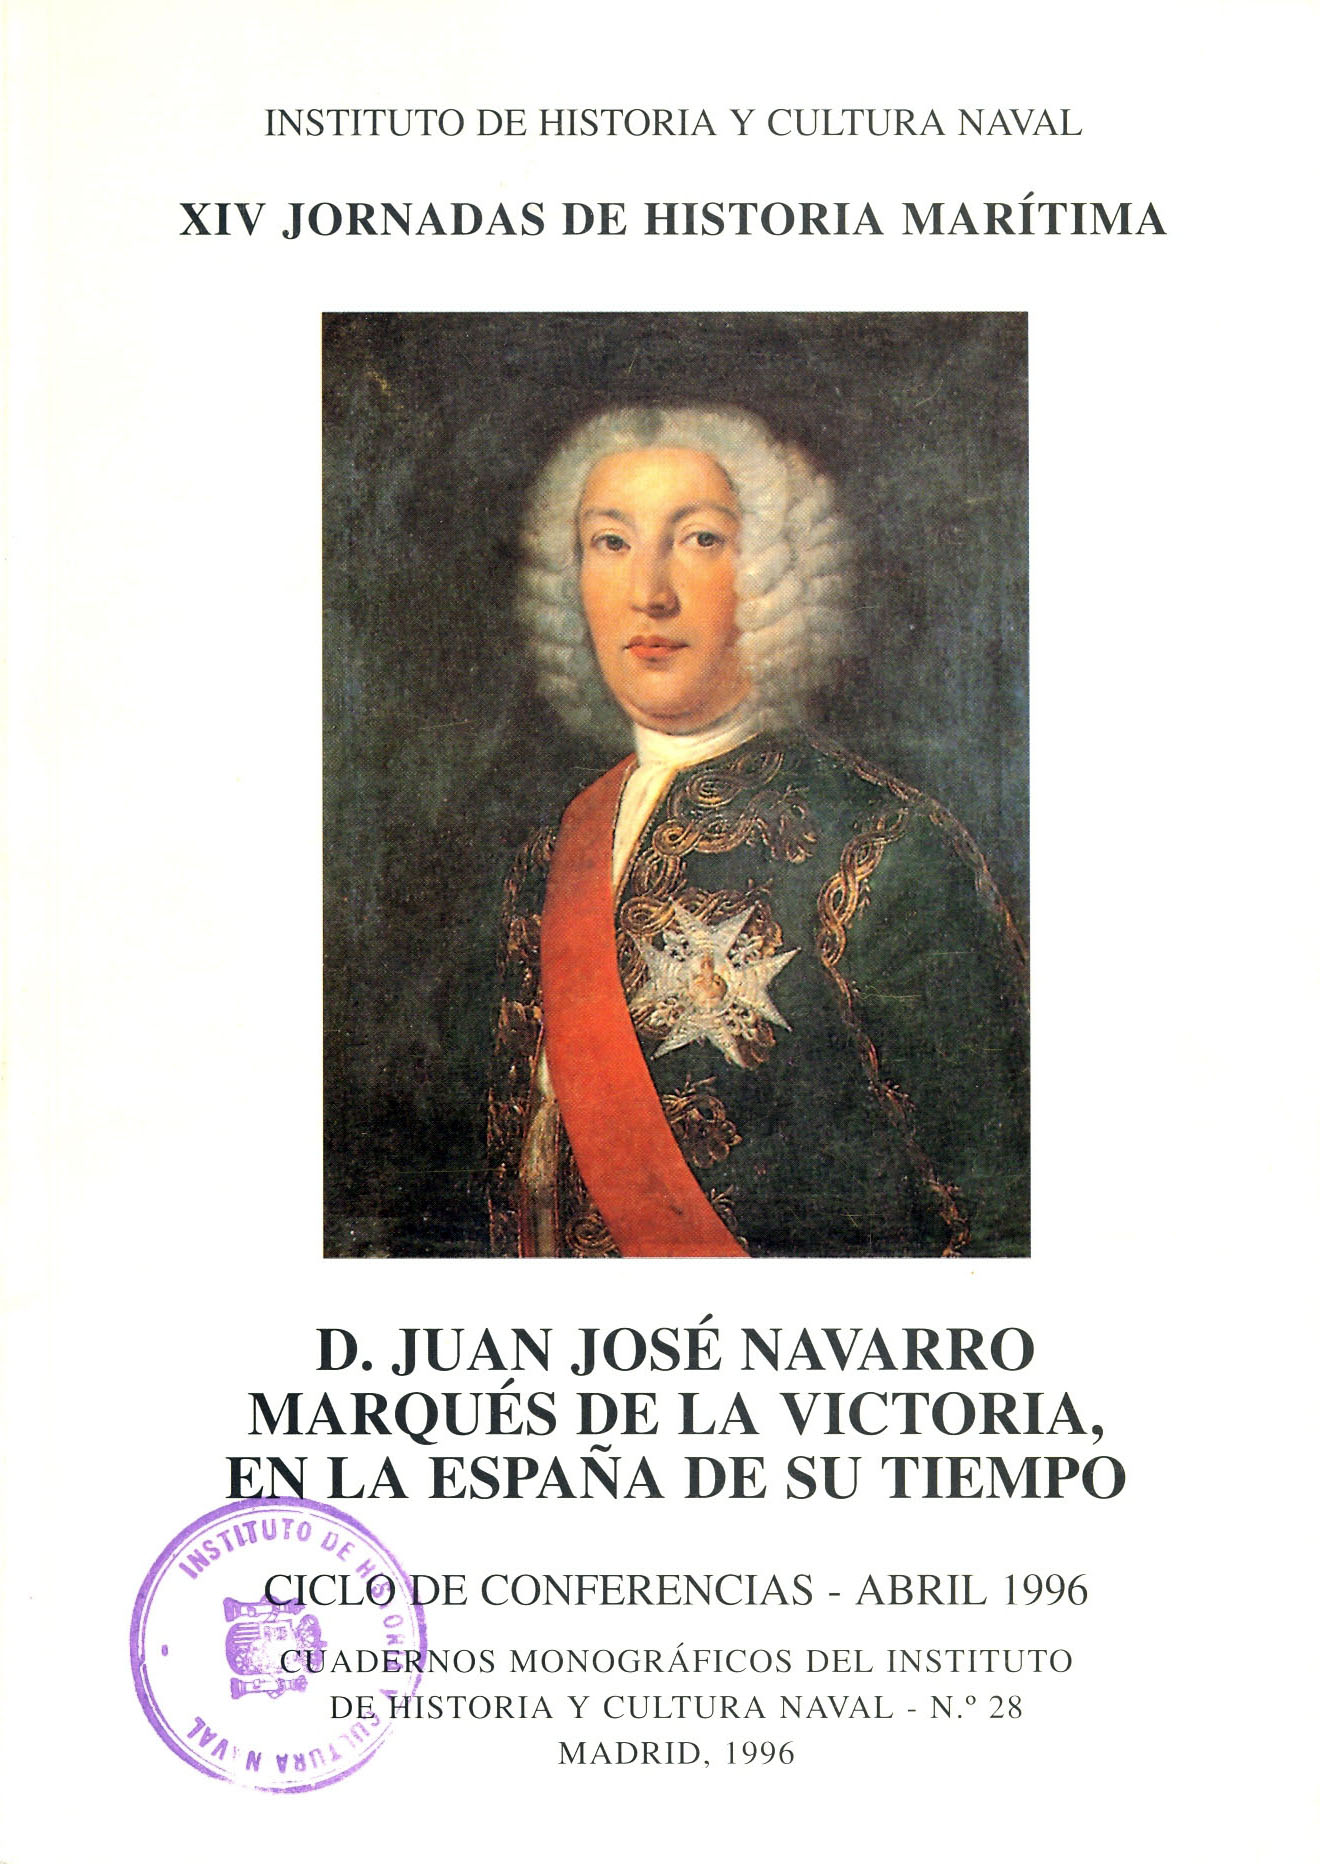 D. Juan José Navarro, Marqués de la Victoria en la España de su tiempo